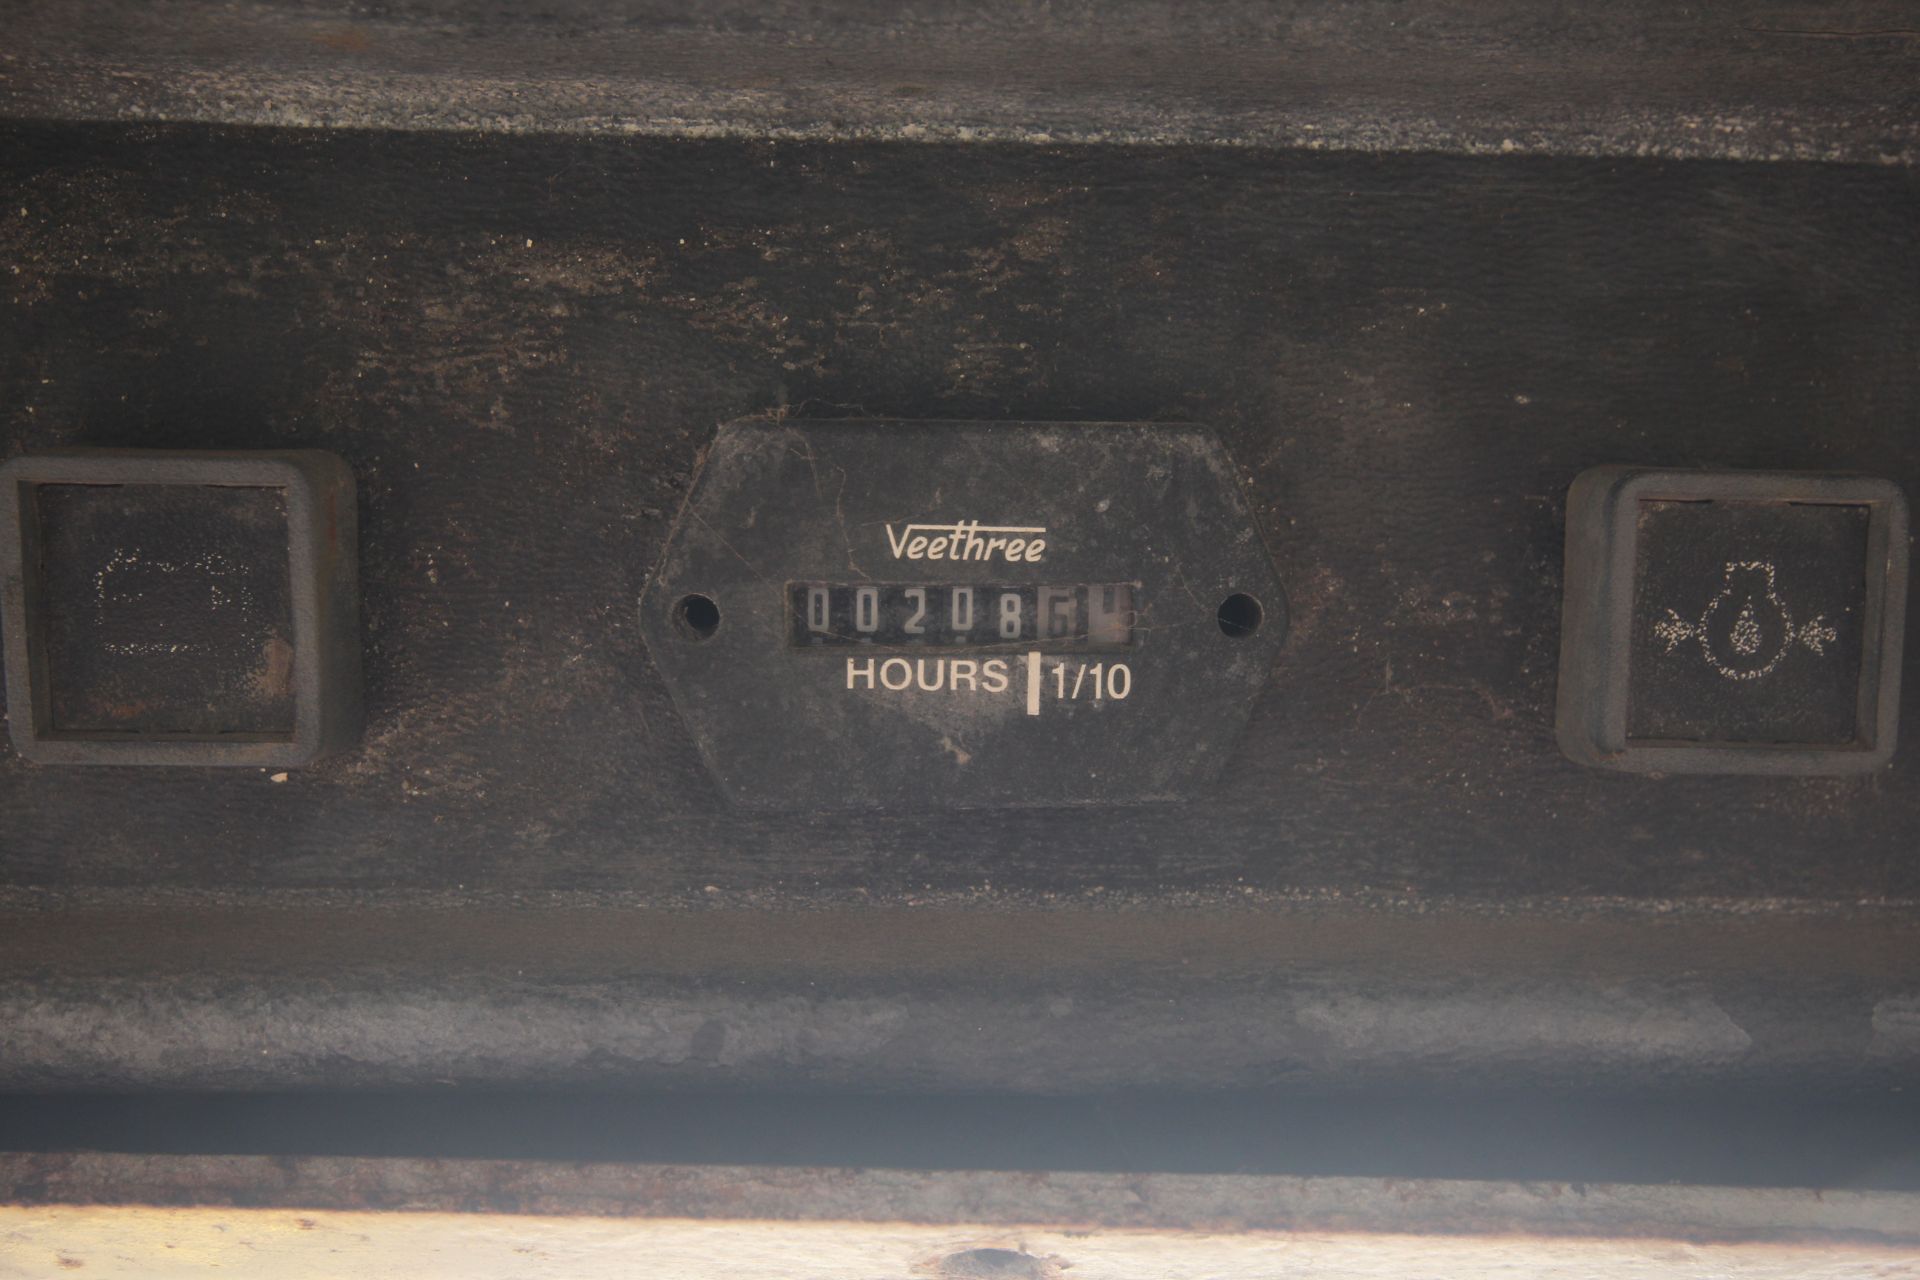 Gehl 3610 skid steer loader. With pallet tines and bucket. Key held. - Image 33 of 35